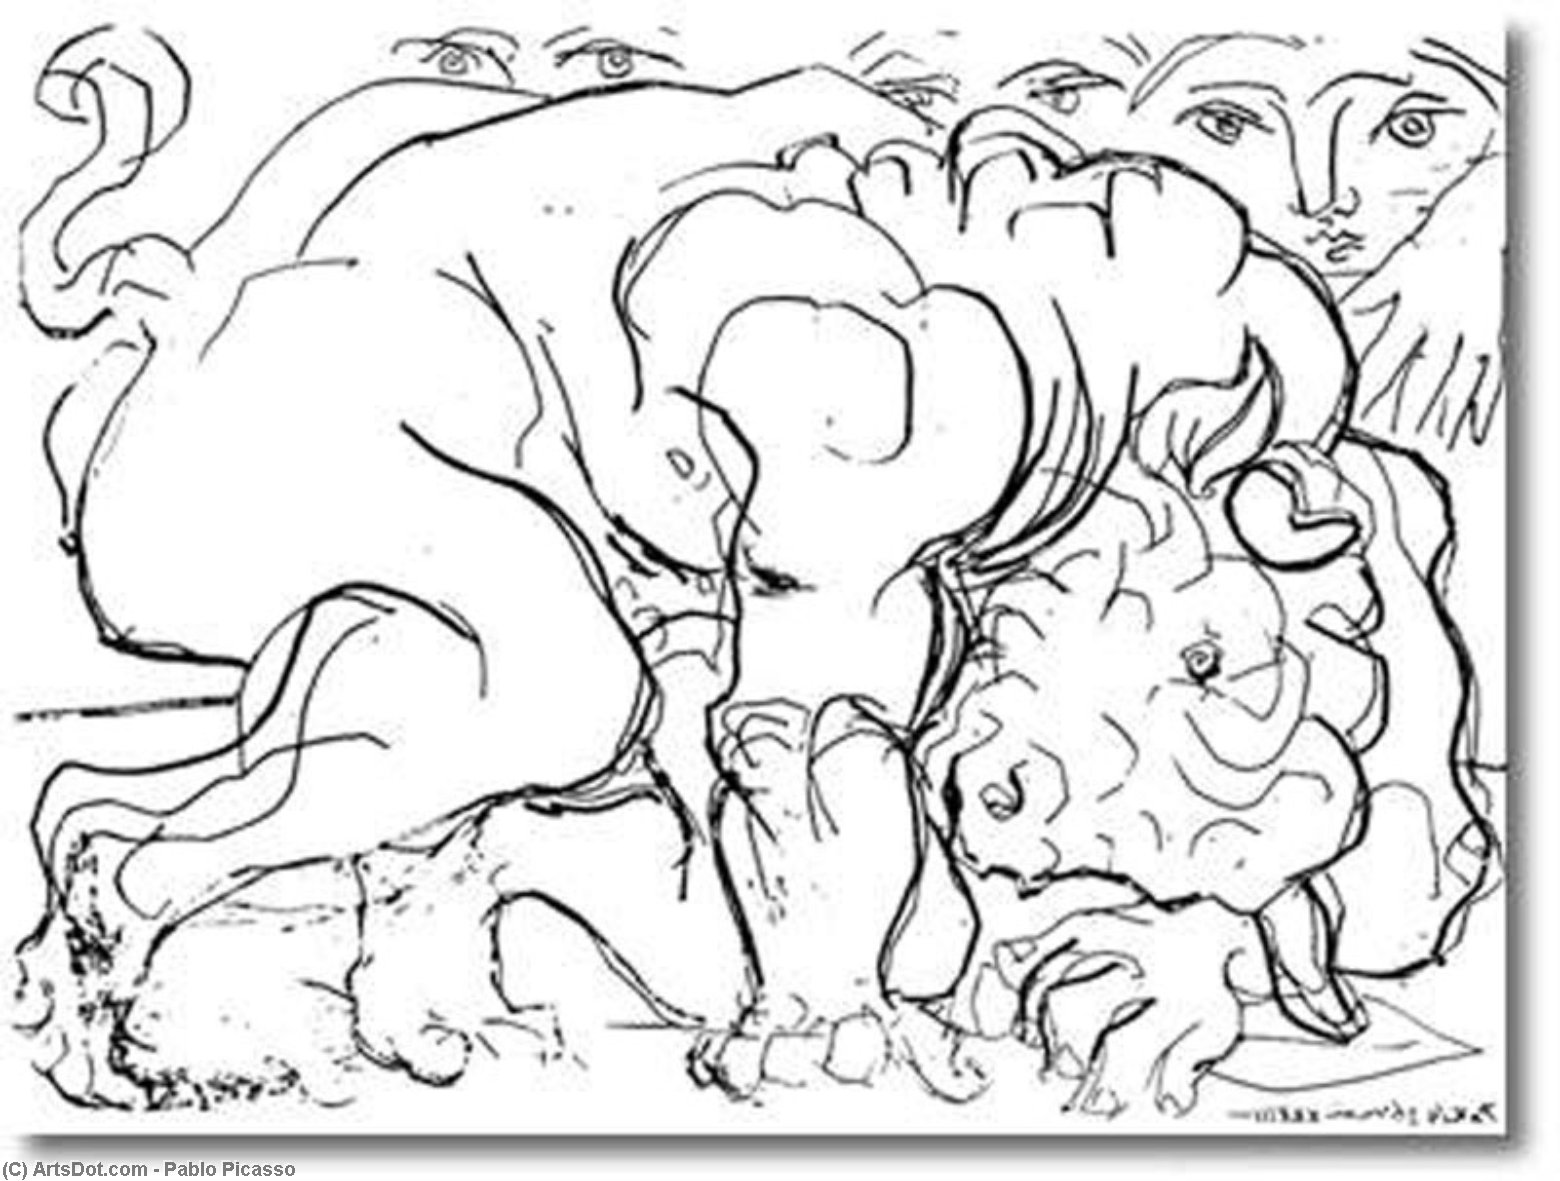 WikiOO.org – 美術百科全書 - 繪畫，作品 Pablo Picasso - 牛头怪 是  负伤